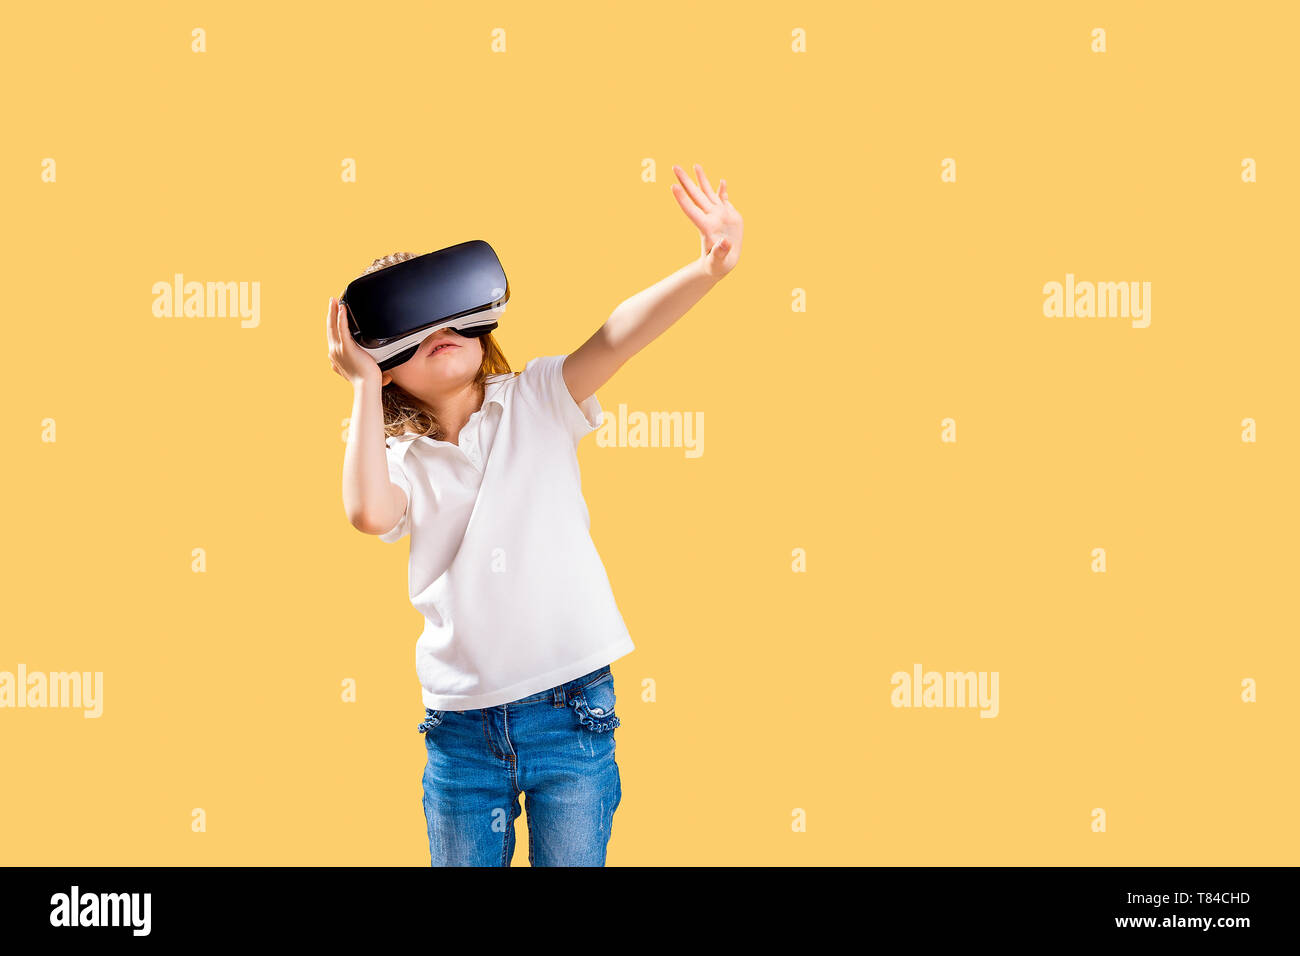 Niño sorprendido con gafas de realidad virtual. niño emocional jugando  juegos de video en auriculares vr. retrato de niño de raza mixta  experimentando gadget 3d en la sala de estar.